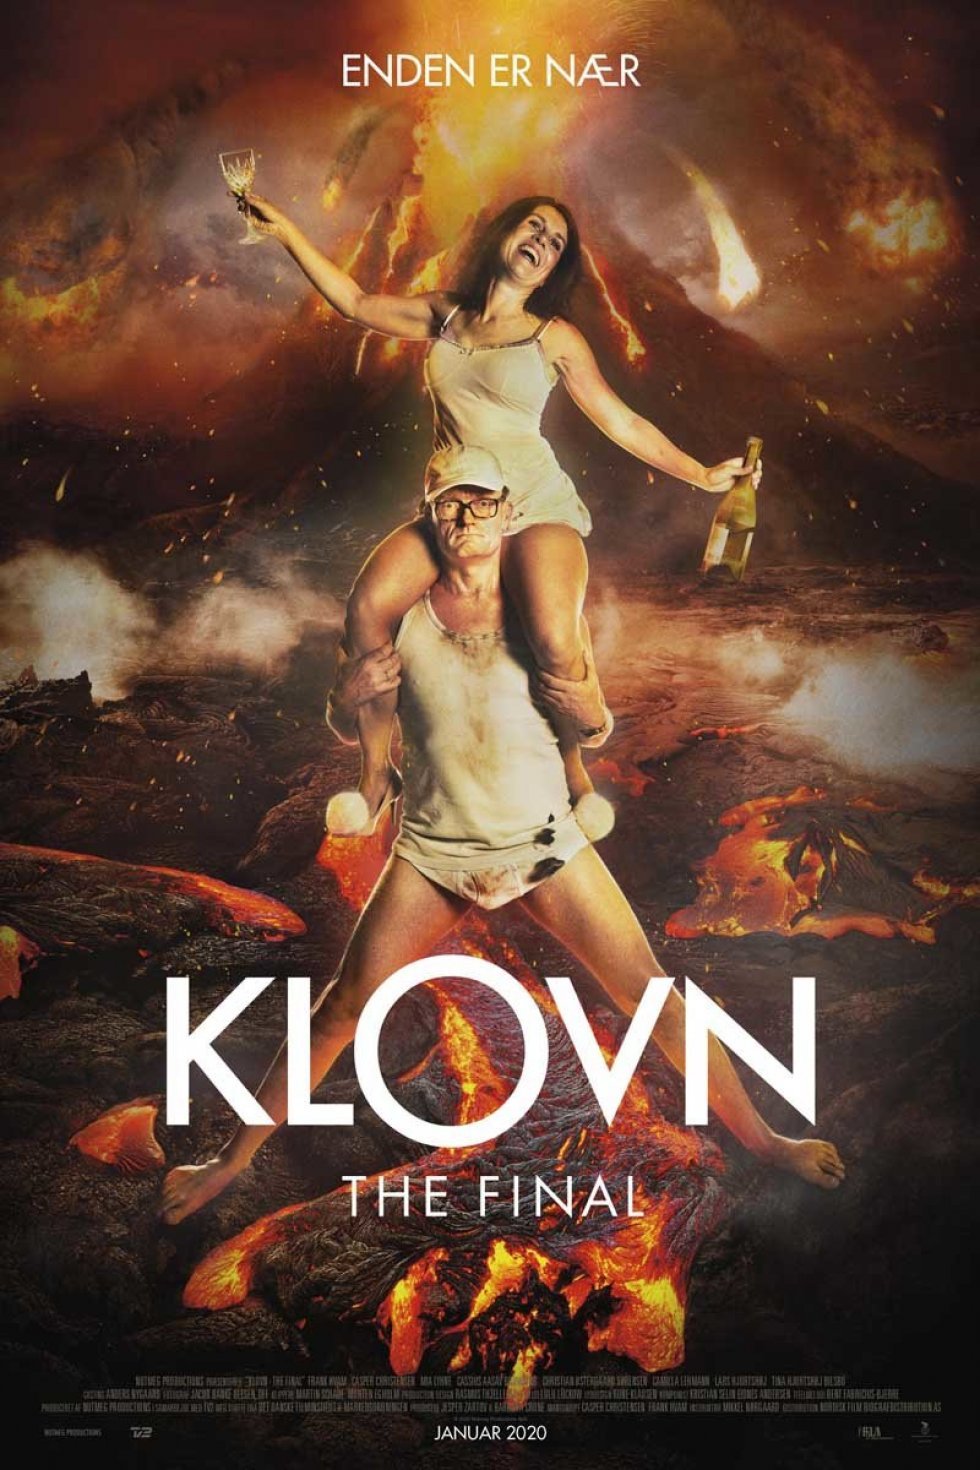 Klovn the Final (Anmeldelse)